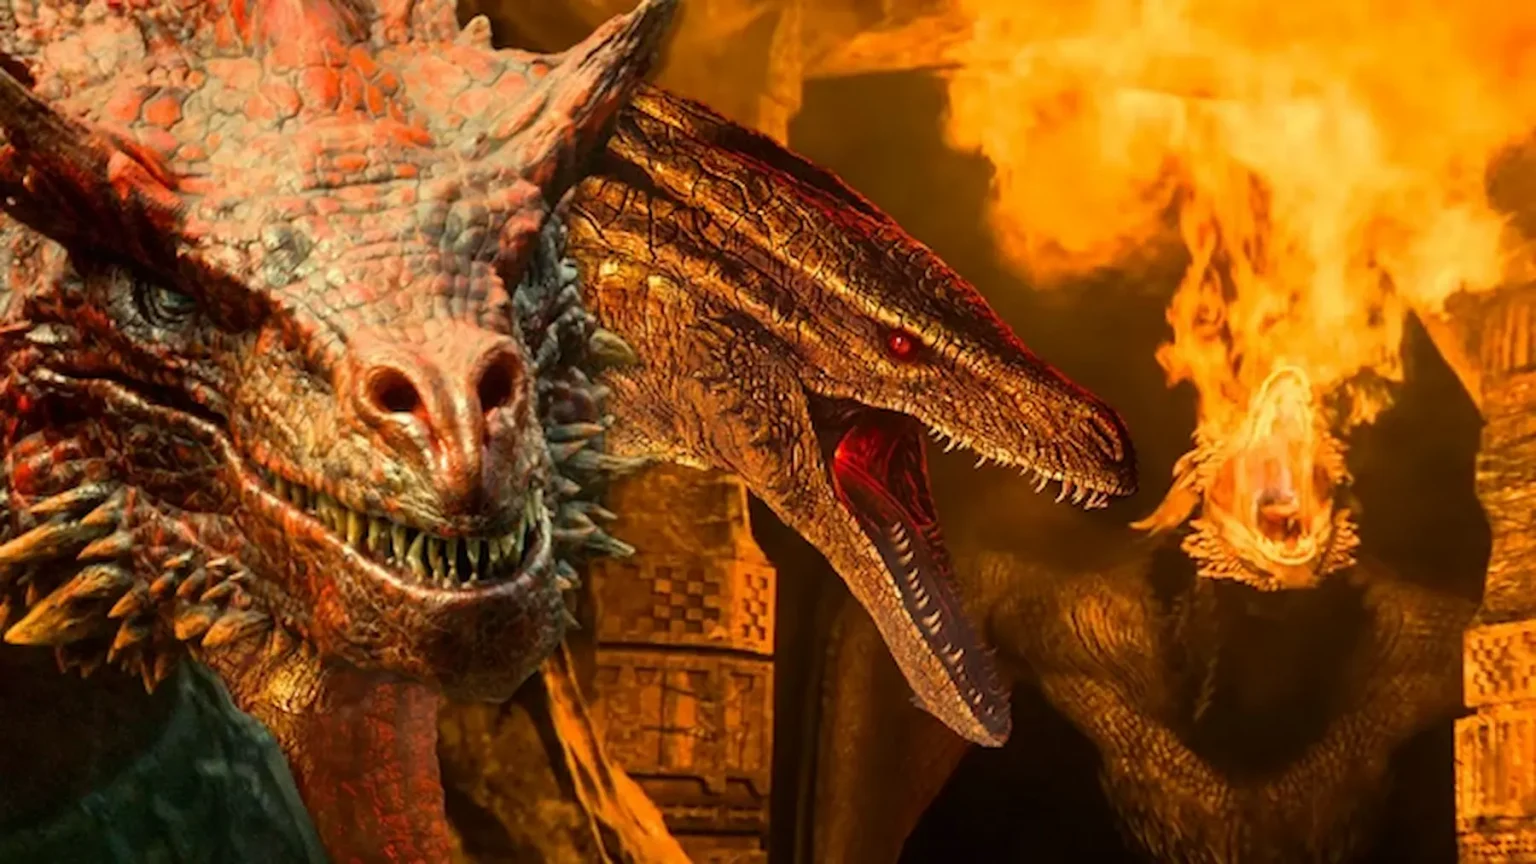 La Casa del Dragón: Todos los dragones y sus jinetes Targaryen, explicados